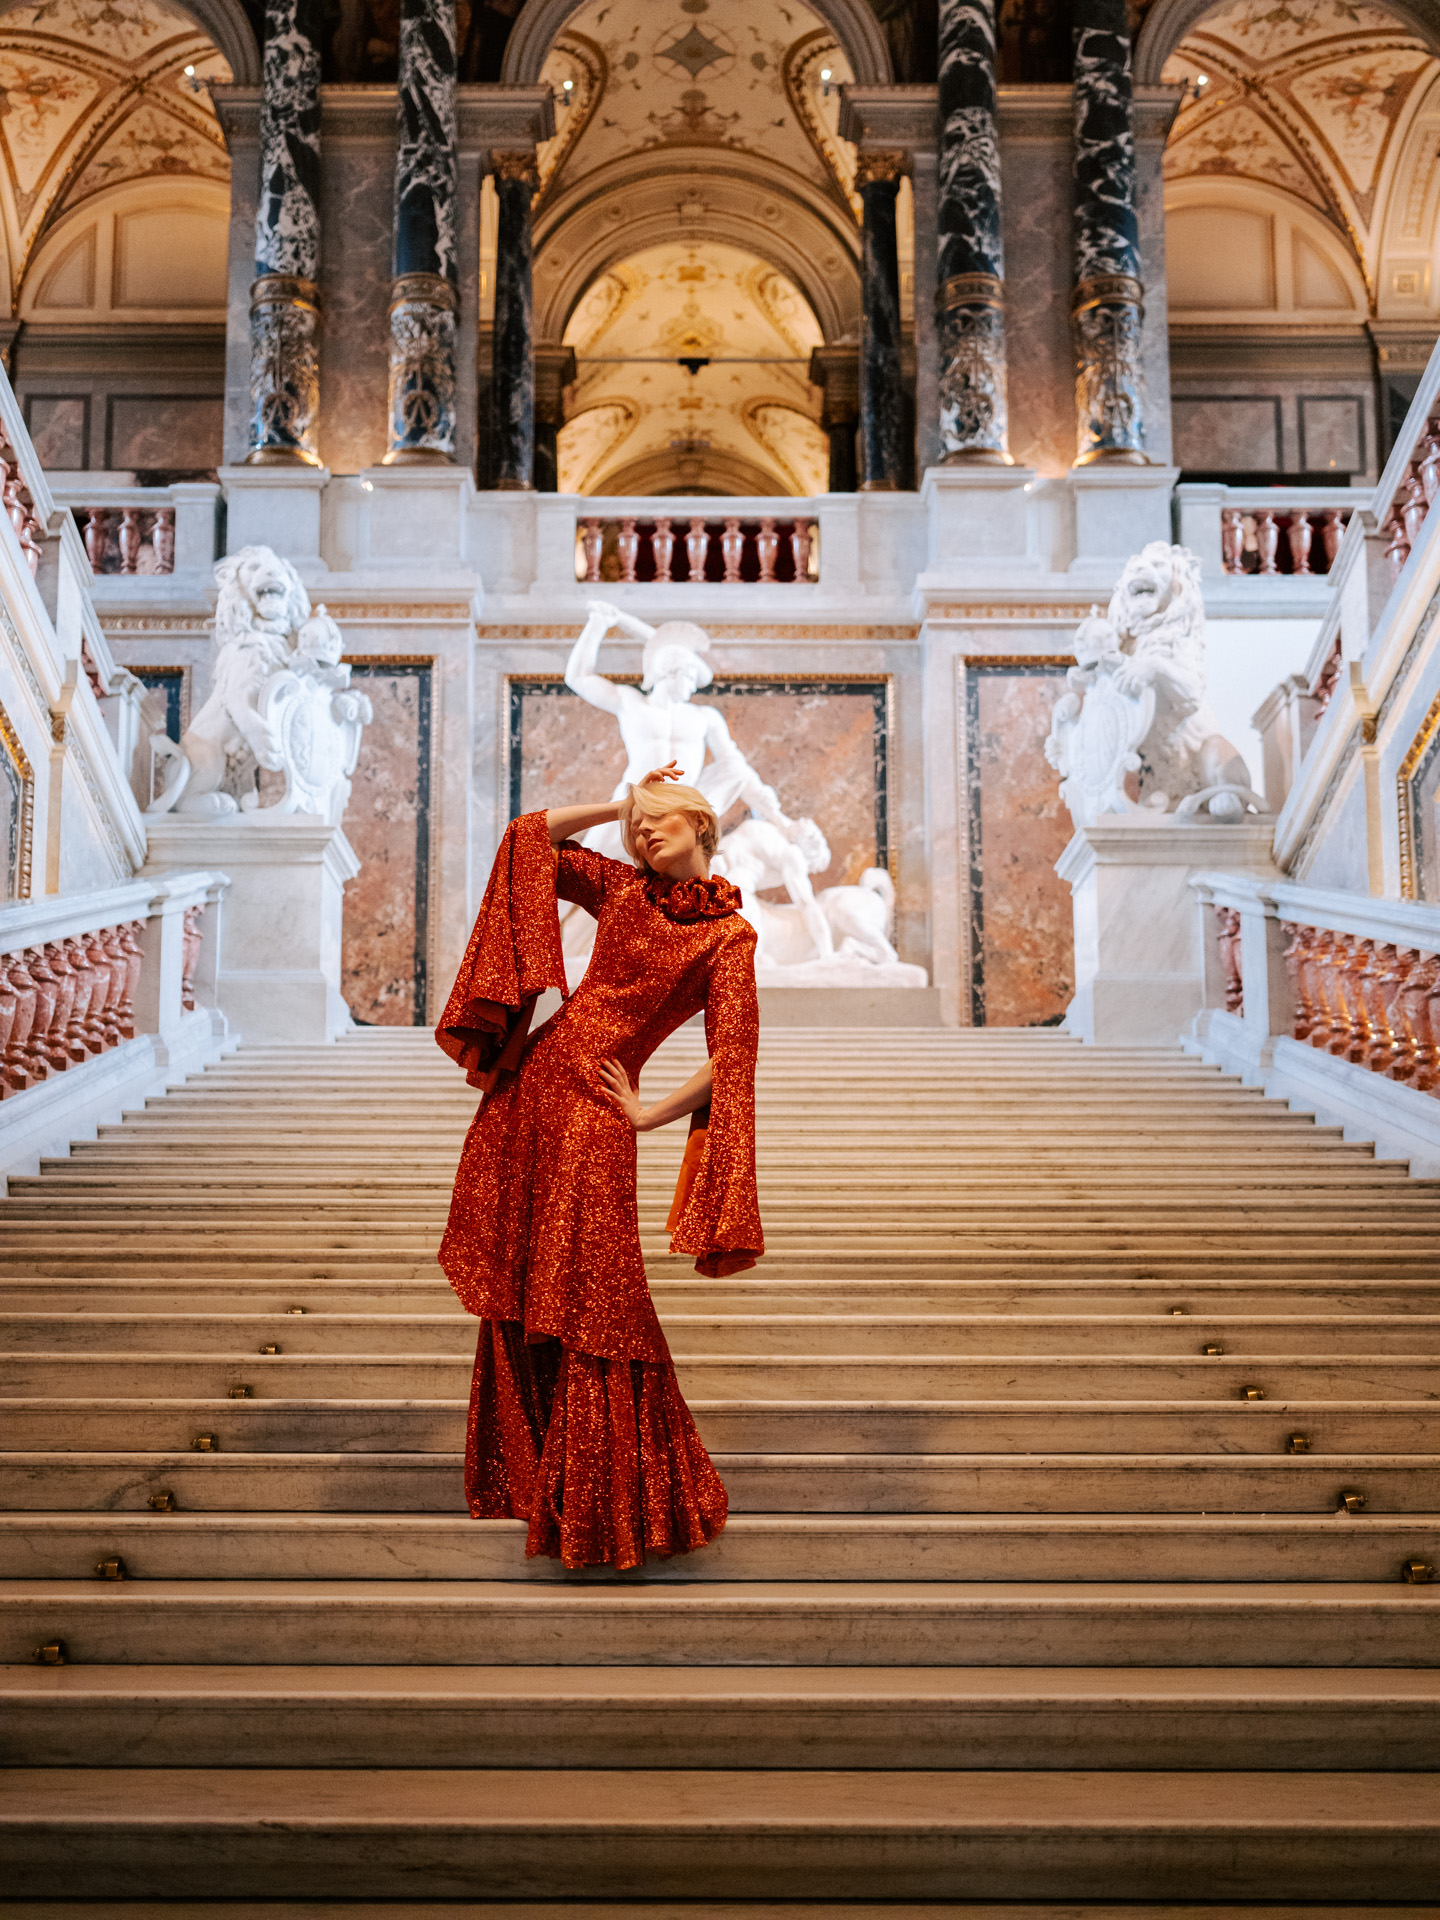 “Vienna – A luxurious journey.” Kleid: Narbon, Ohrringe: Swarovski, Location: Kunsthistorisches Museum 